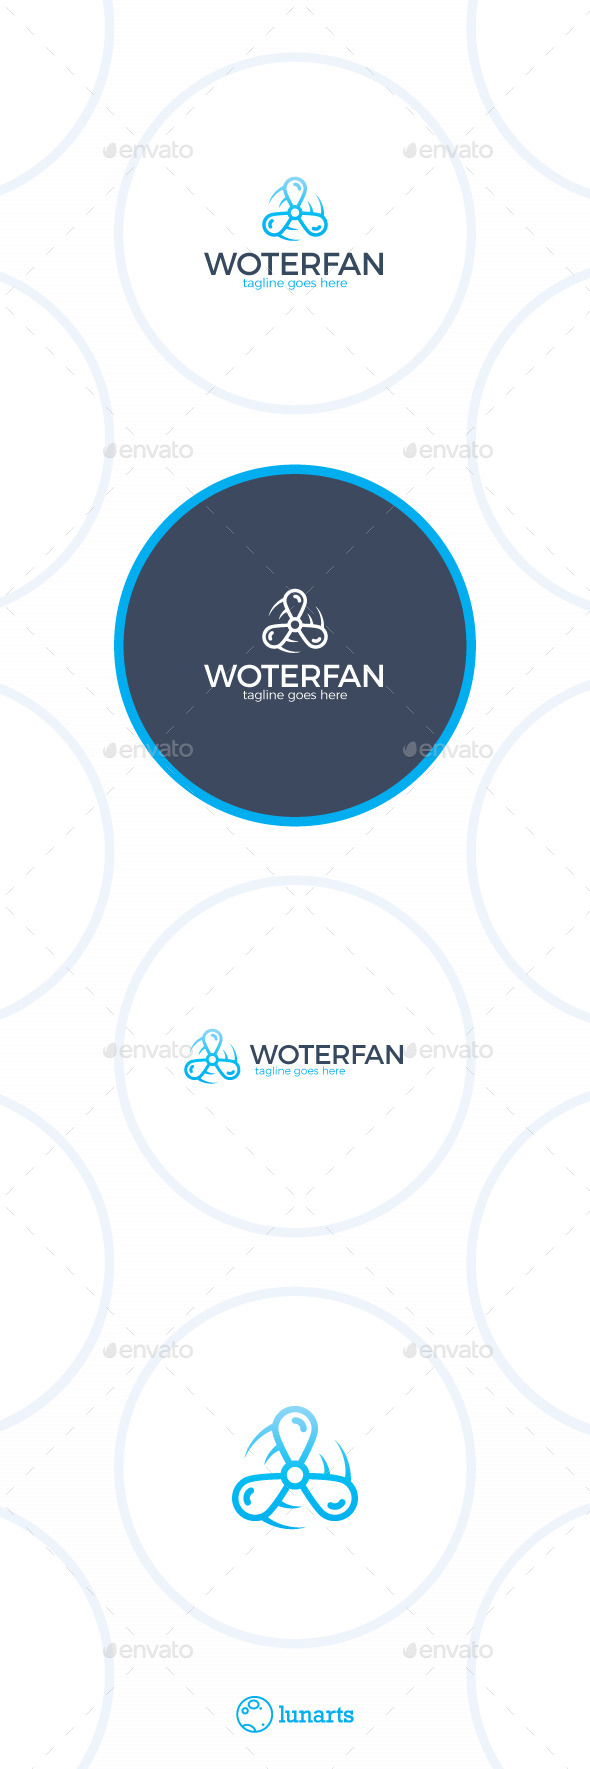 Water Fan Logo - Drop Propeller